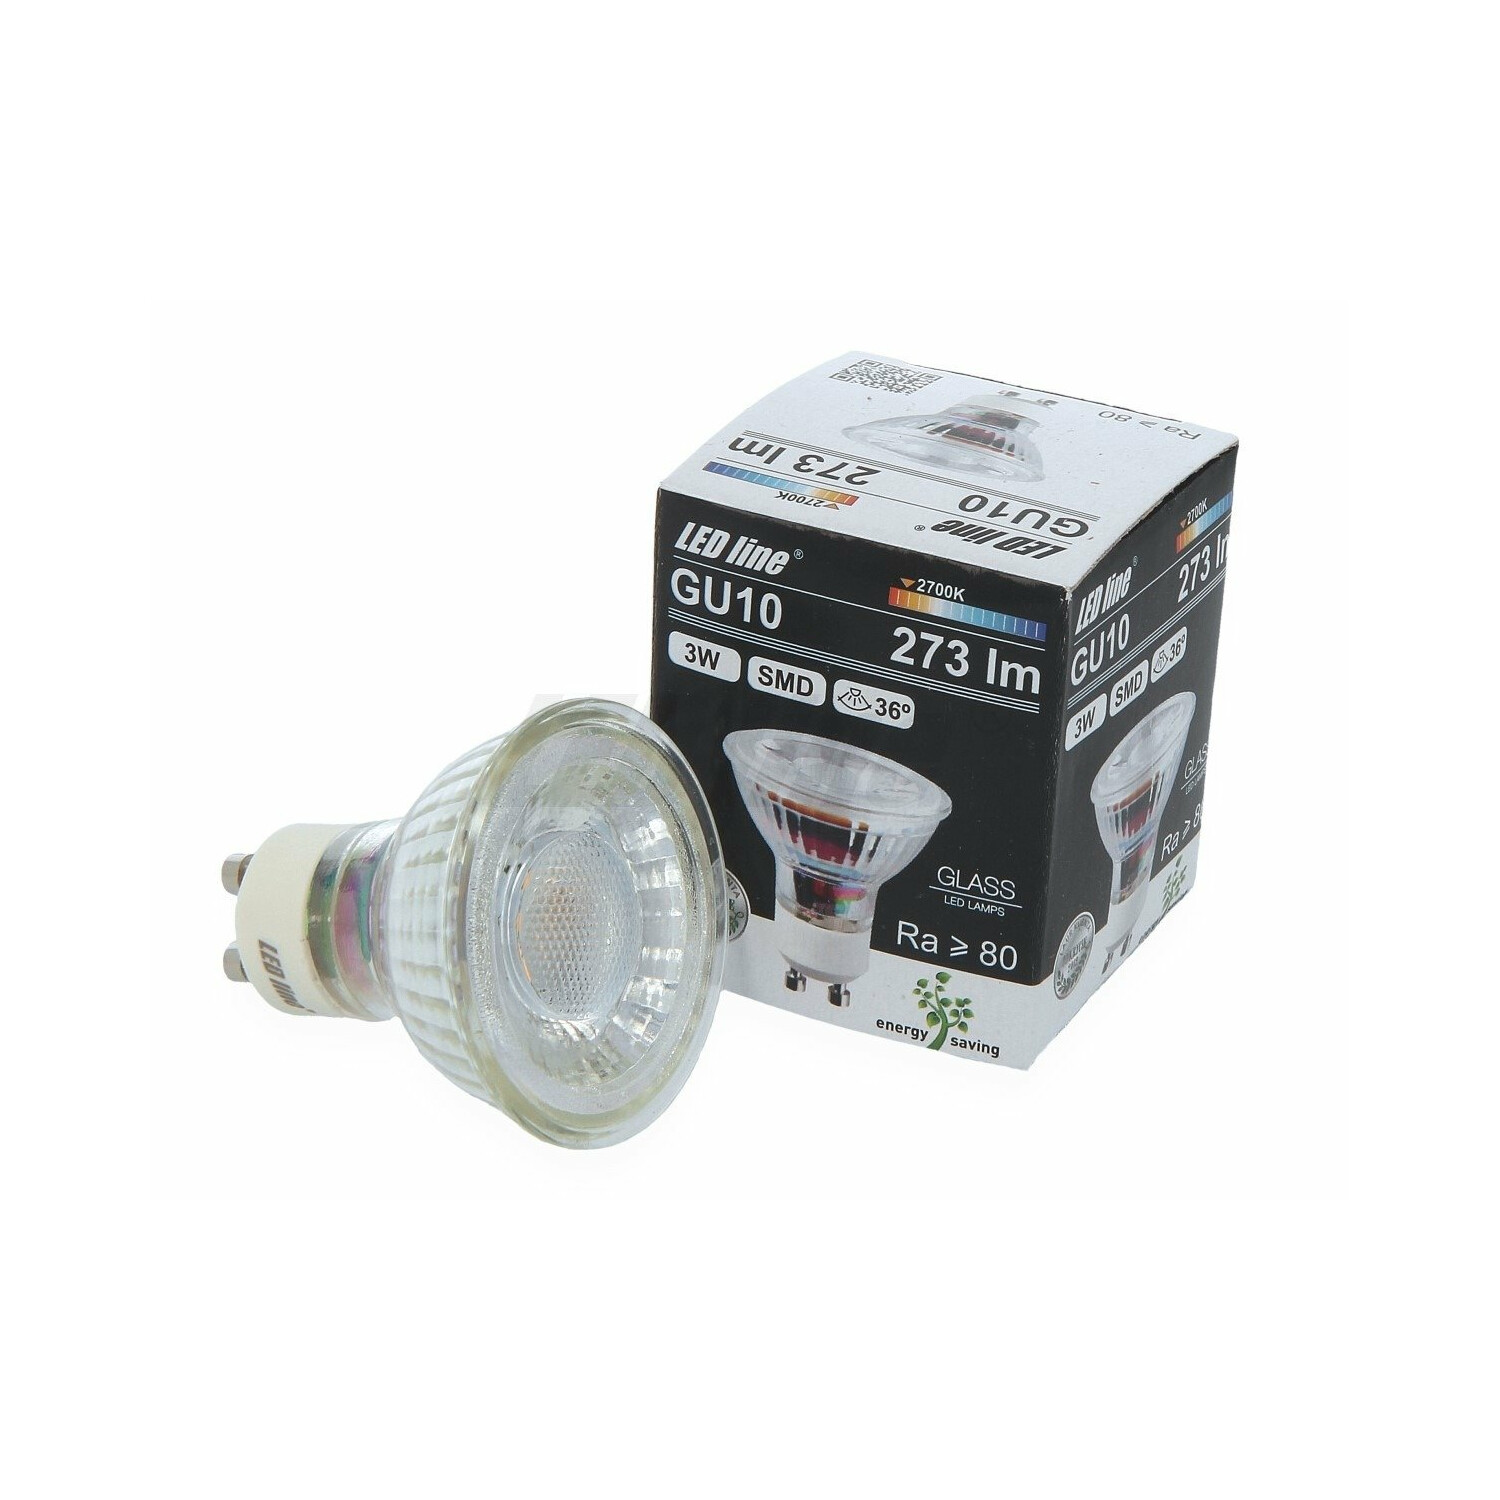 LED LINE 3W LED GU10 1x SMD Leuchtmittel 273 36° Warmweiß Lumen